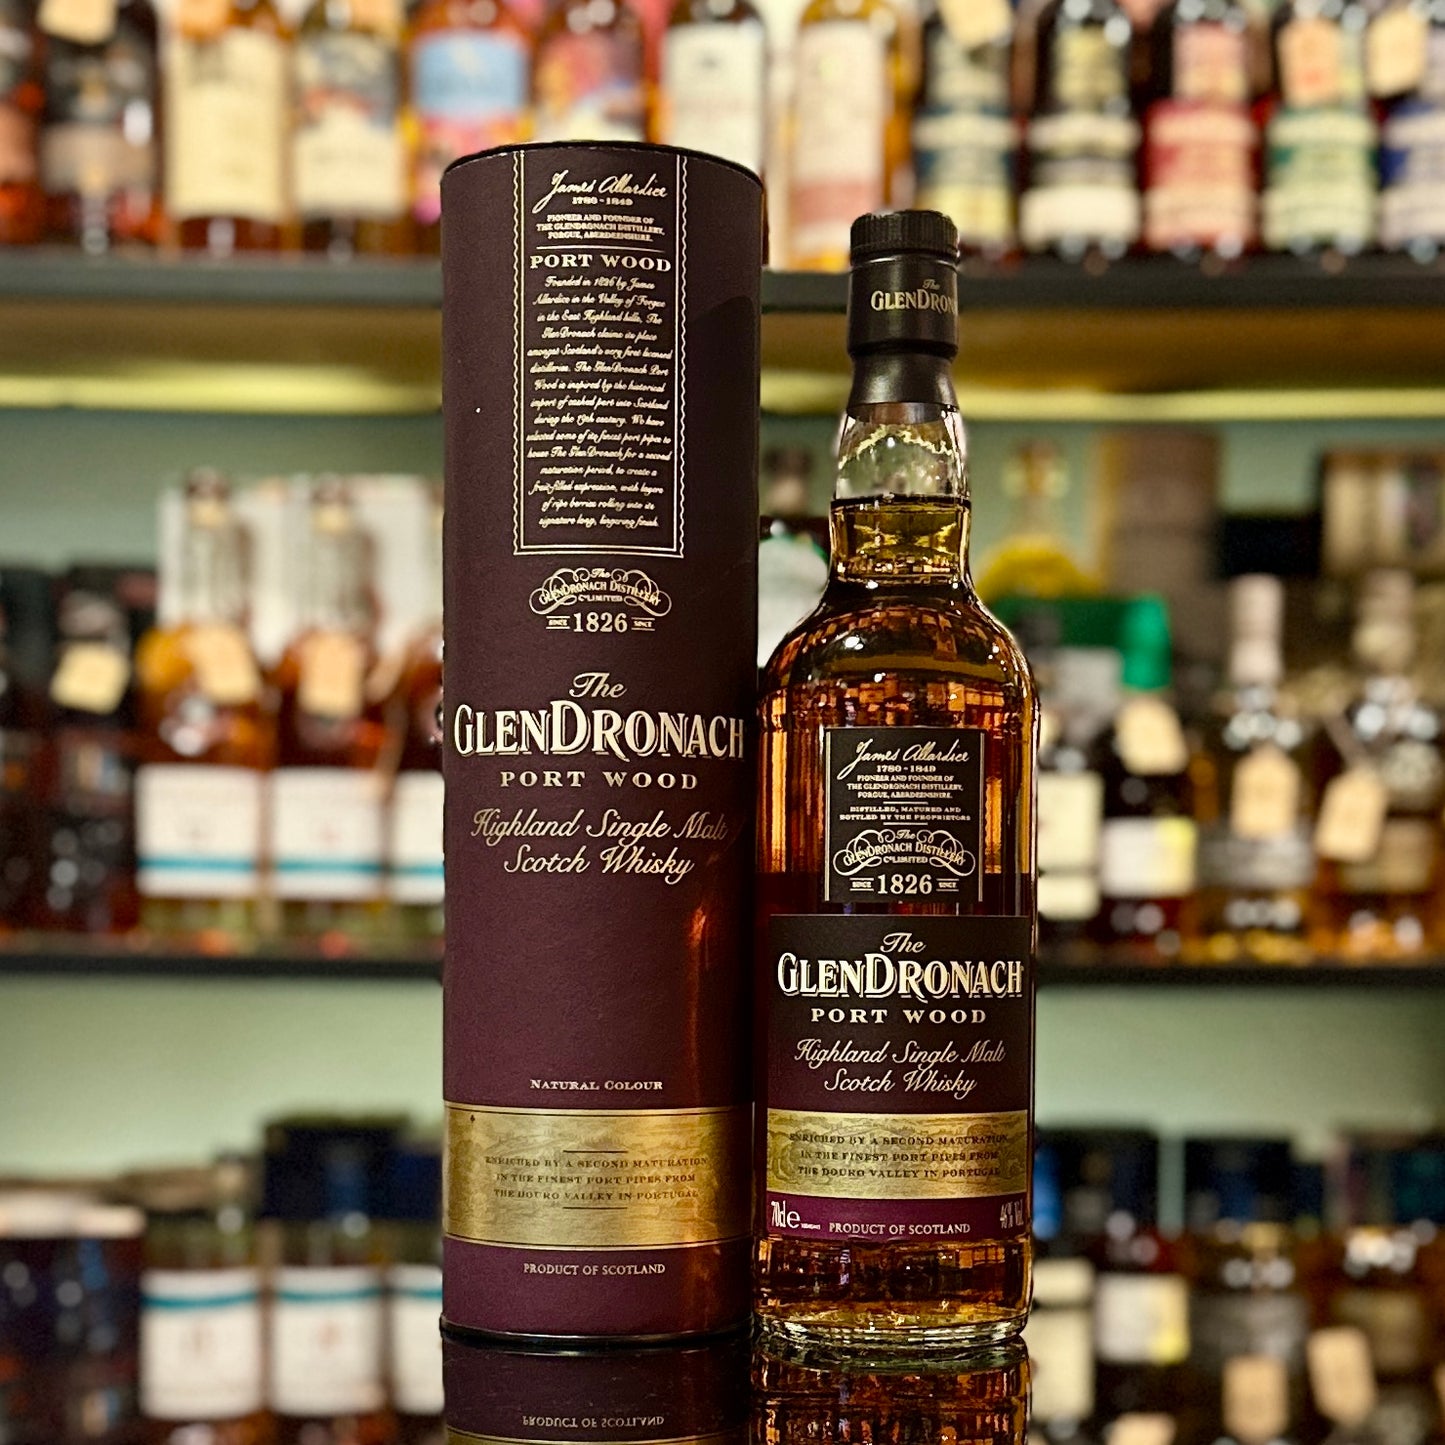 GlenDronach Port Wood Single Malt Scotch Whisky